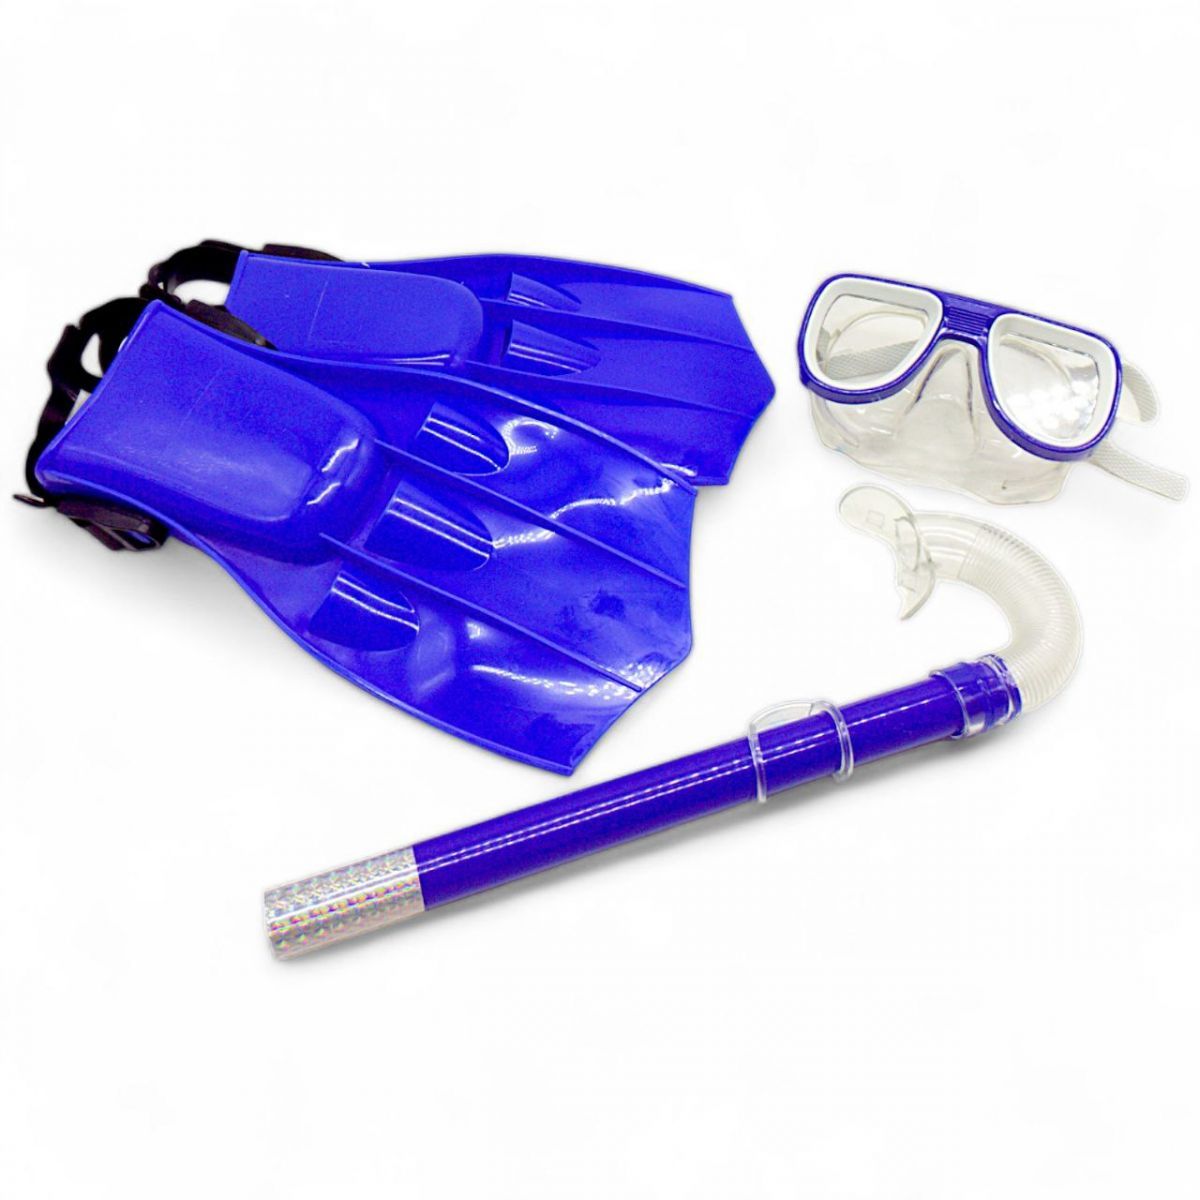 Уценка.  Набор для плавания (маска, ласты, трубка), синий Трещина на маске